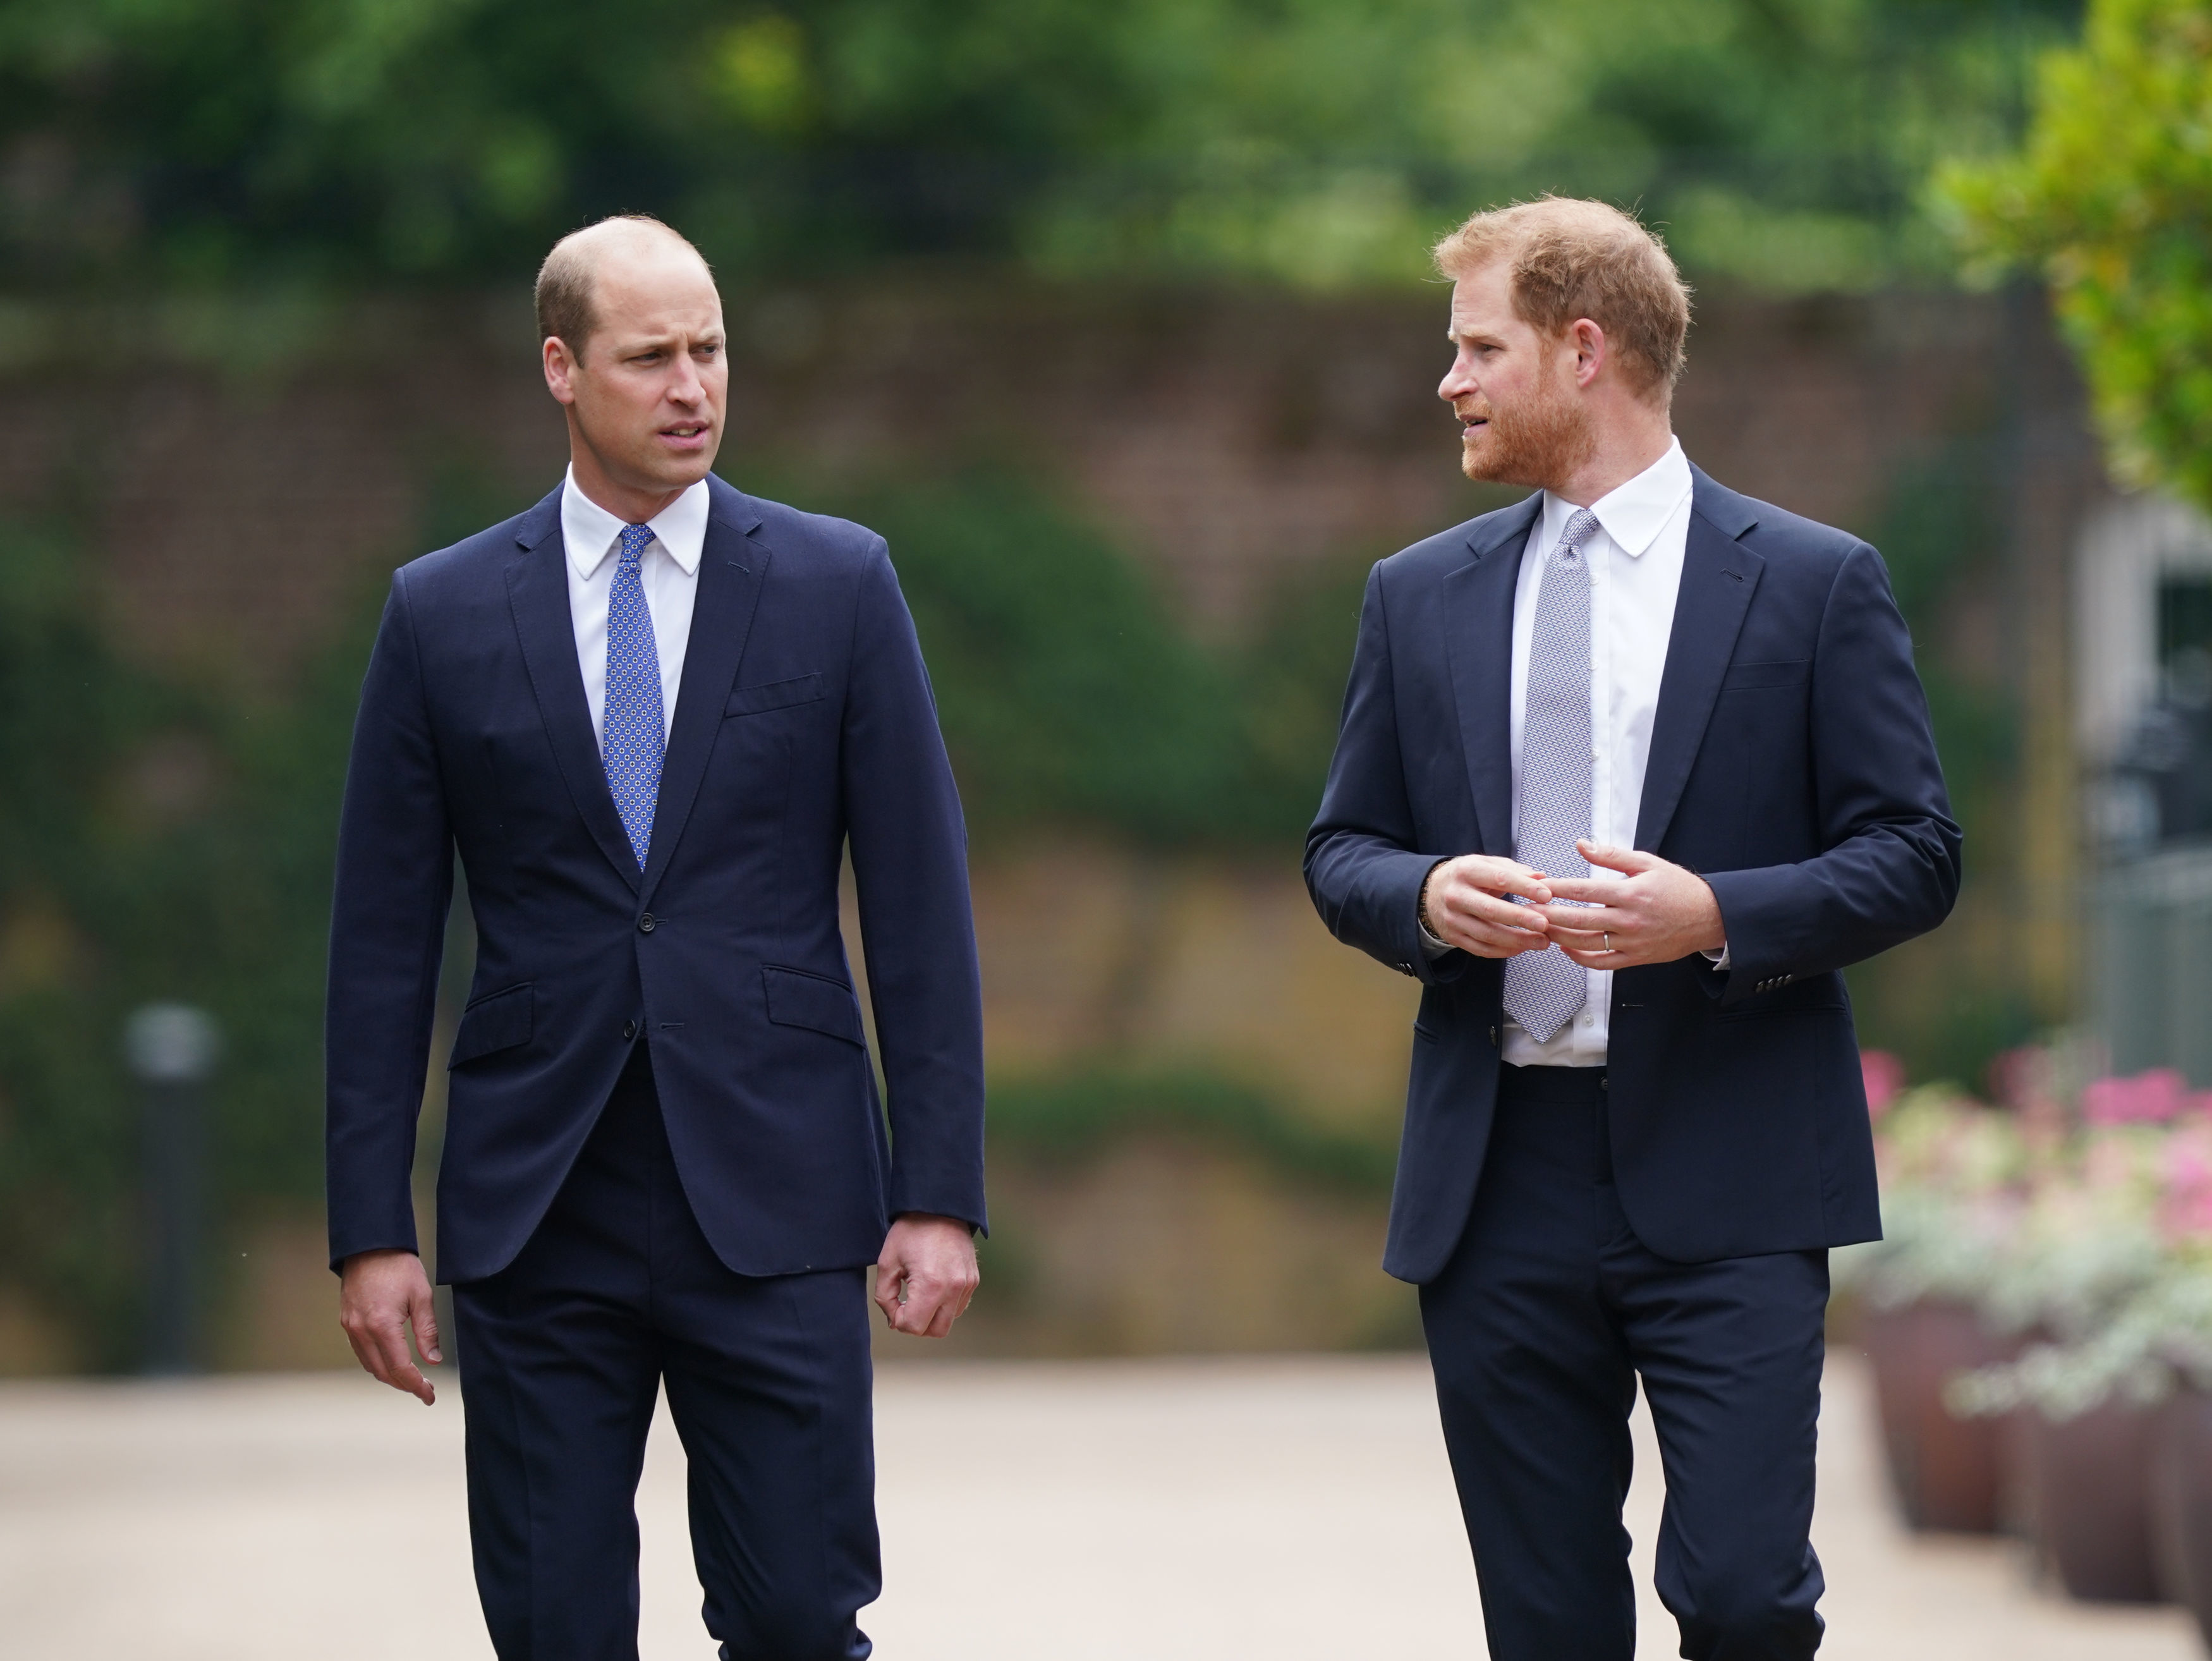 El príncipe William y el príncipe Harry en la inauguración de una estatua que encargaron de su madre Diana, Princesa de Gales, en Londres, Inglaterra, el 1 de julio de 2021 | Fuente: Getty Images